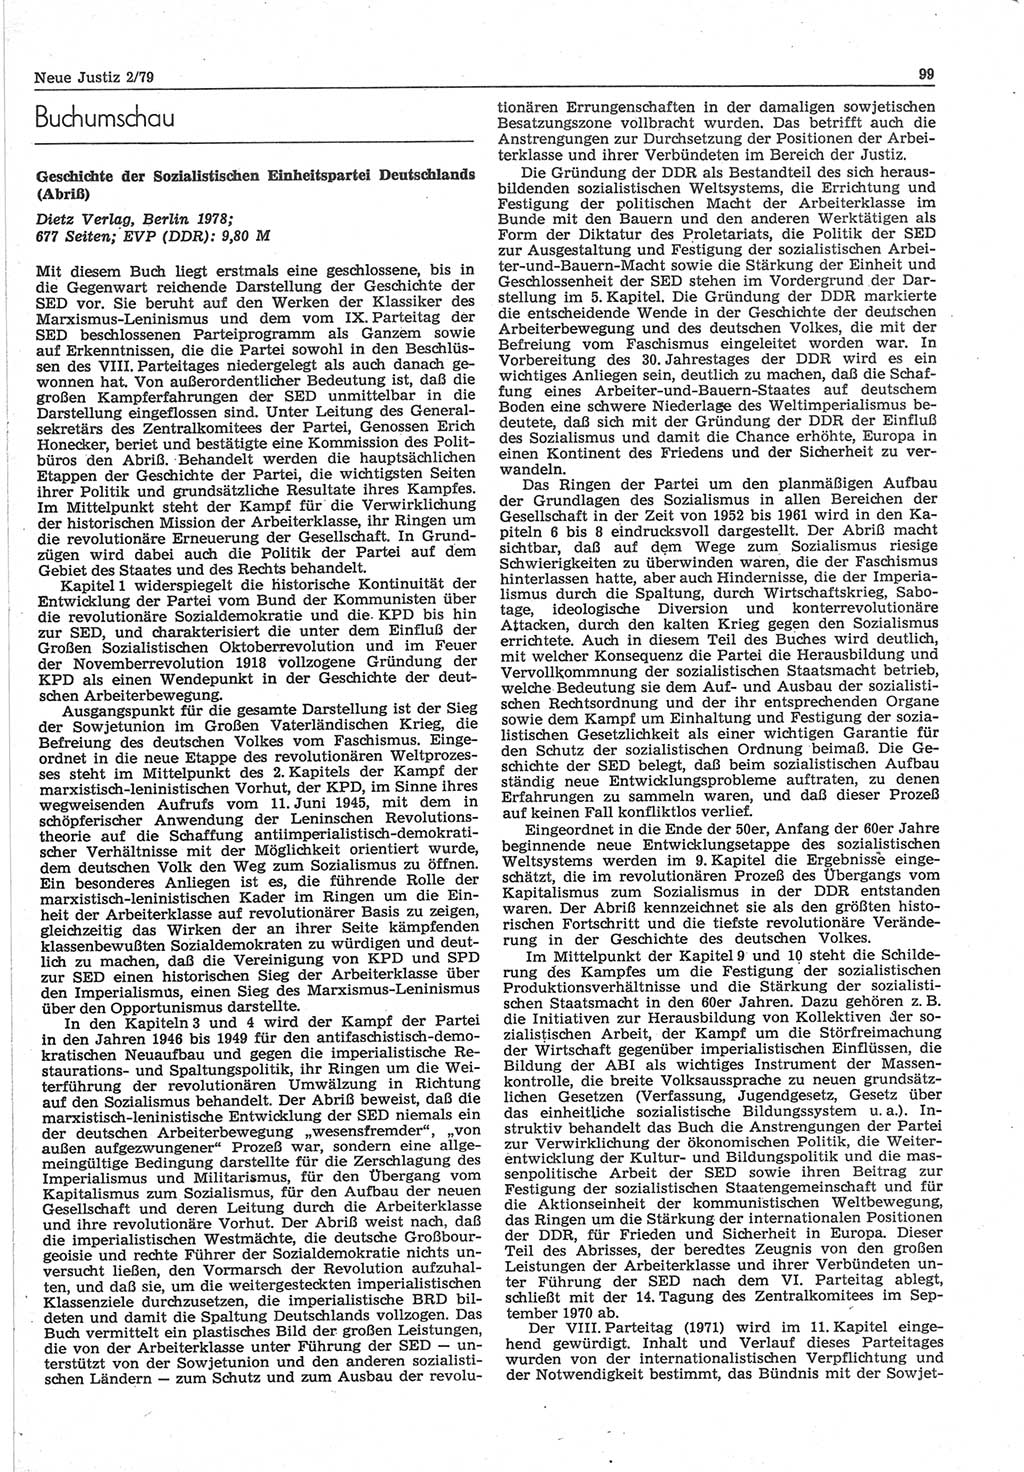 Neue Justiz (NJ), Zeitschrift für sozialistisches Recht und Gesetzlichkeit [Deutsche Demokratische Republik (DDR)], 33. Jahrgang 1979, Seite 99 (NJ DDR 1979, S. 99)